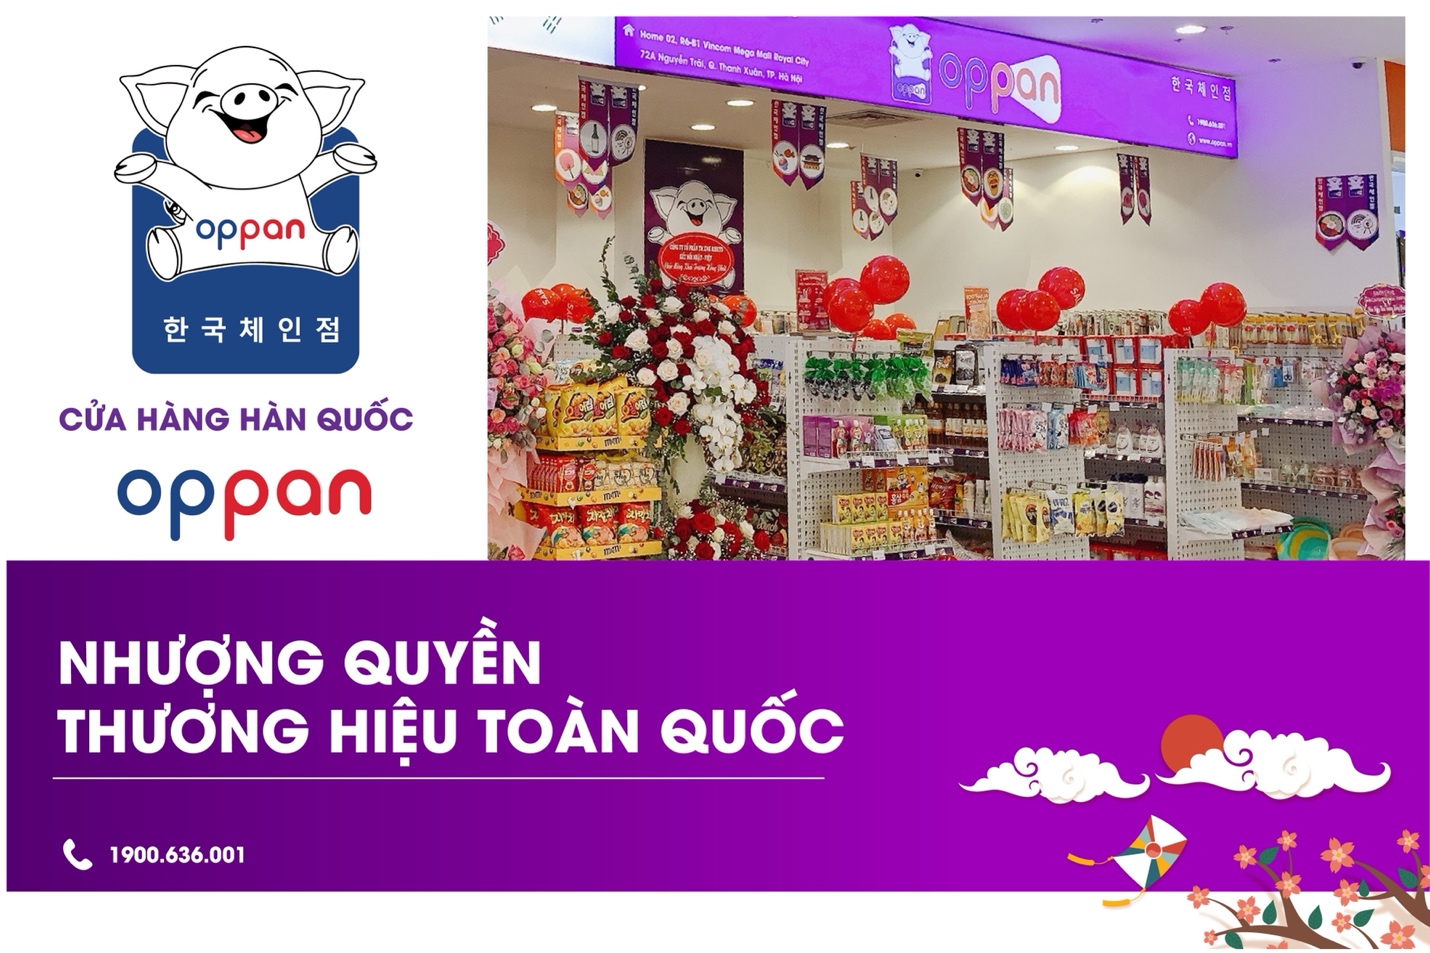 Nhượng quyền mô hình cửa hàng Hàn Quốc OPPAN ngay chỉ với 50 triệu đồng - Ảnh 4.